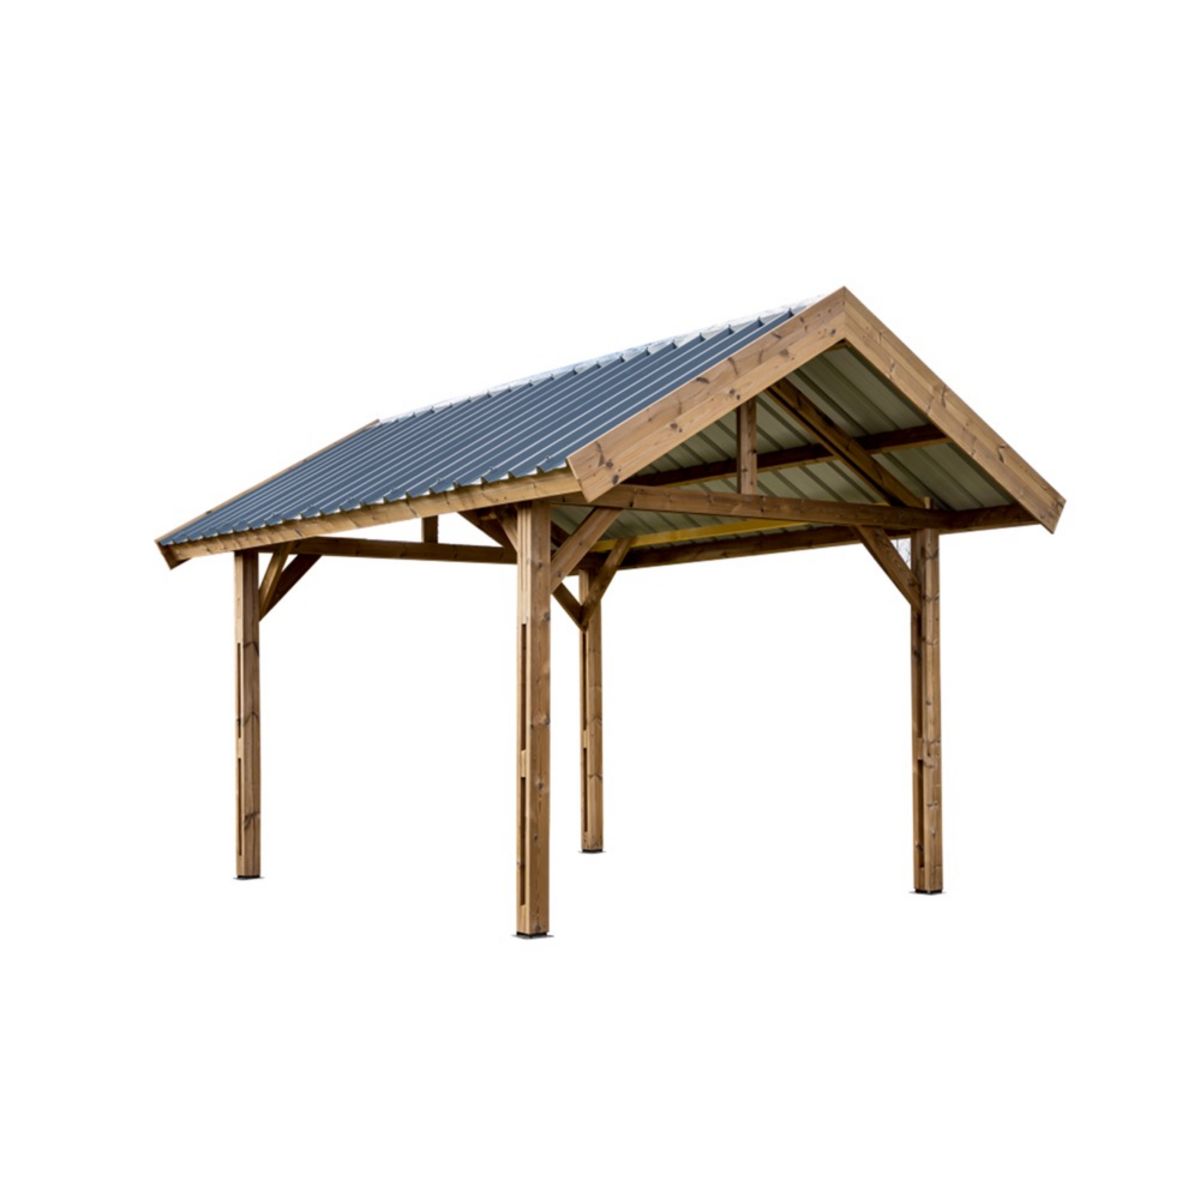 CENTRALE BRICO Auvent THURAC en bois thermo chauffé toit double pente 30° couverture bac acier